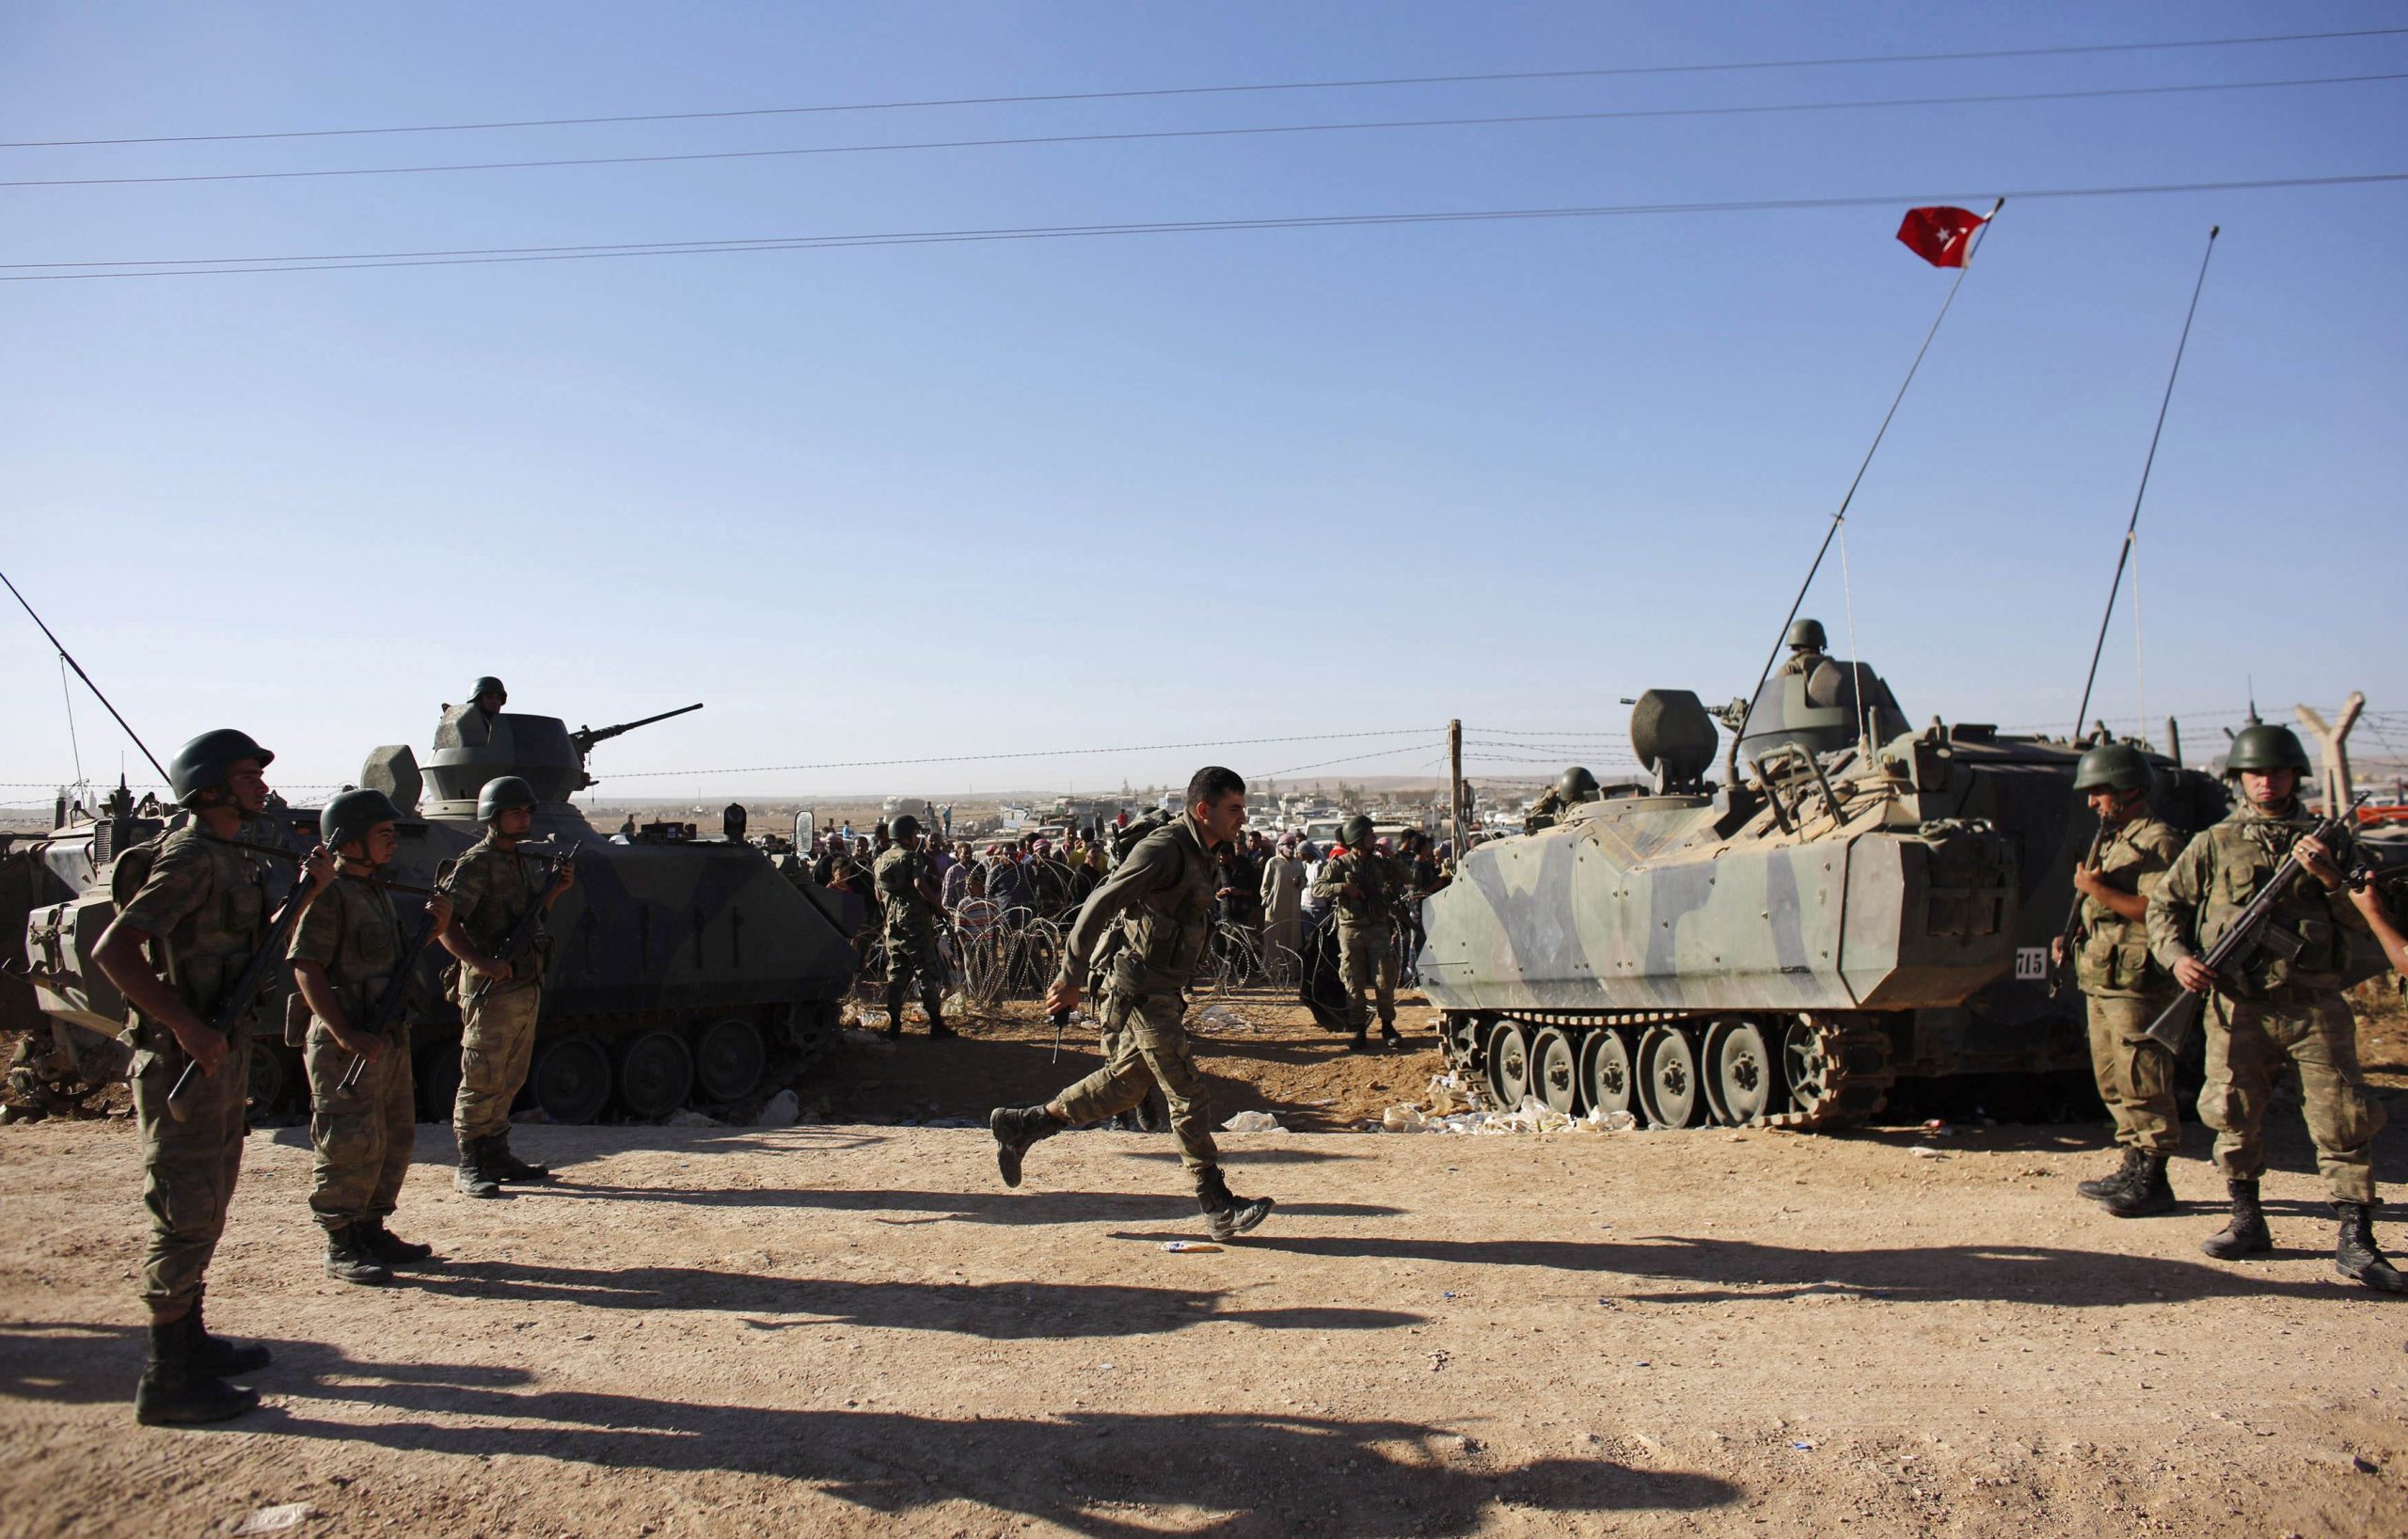 Σύριοι και Τούρκοι ετοιμάζονται να επιτεθούν εναντίον των Κούρδων στην Συρία